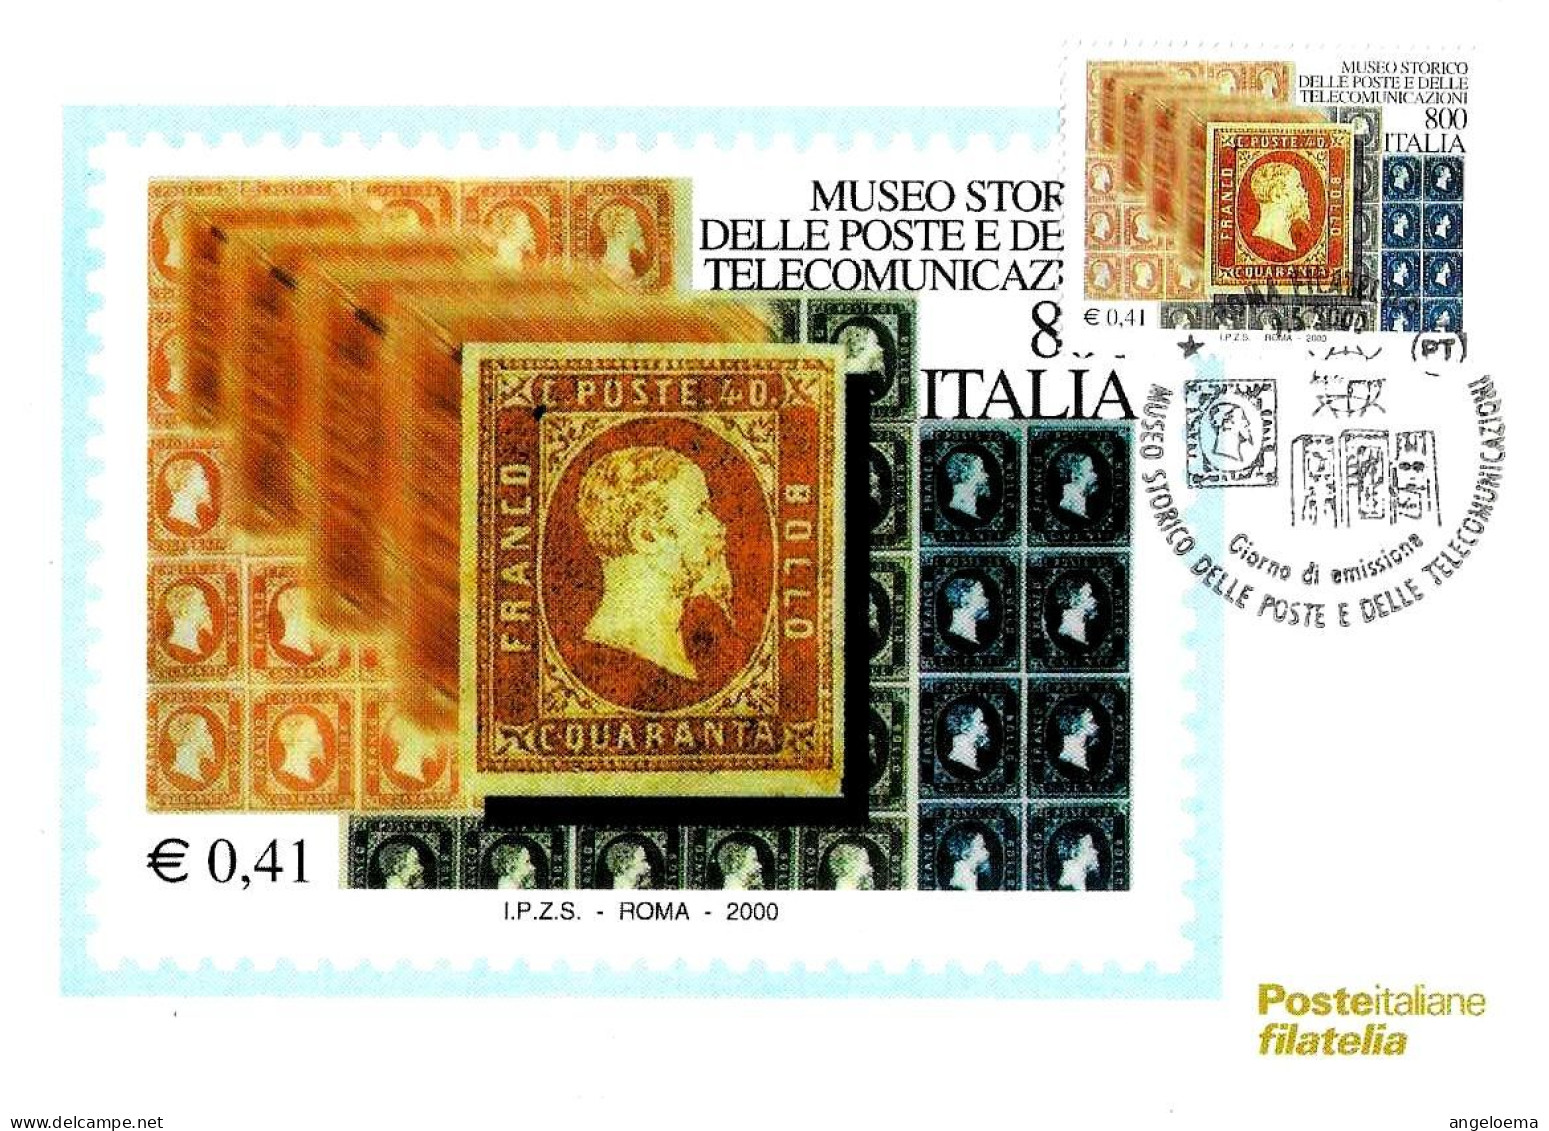 ITALIA ITALY - 2000 ROMA Museo Poste E Telecomunicazioni Francobolli Regno Di Sardegna Annullo Fdc Su Cartolina PT - 770 - Briefmarkenausstellungen